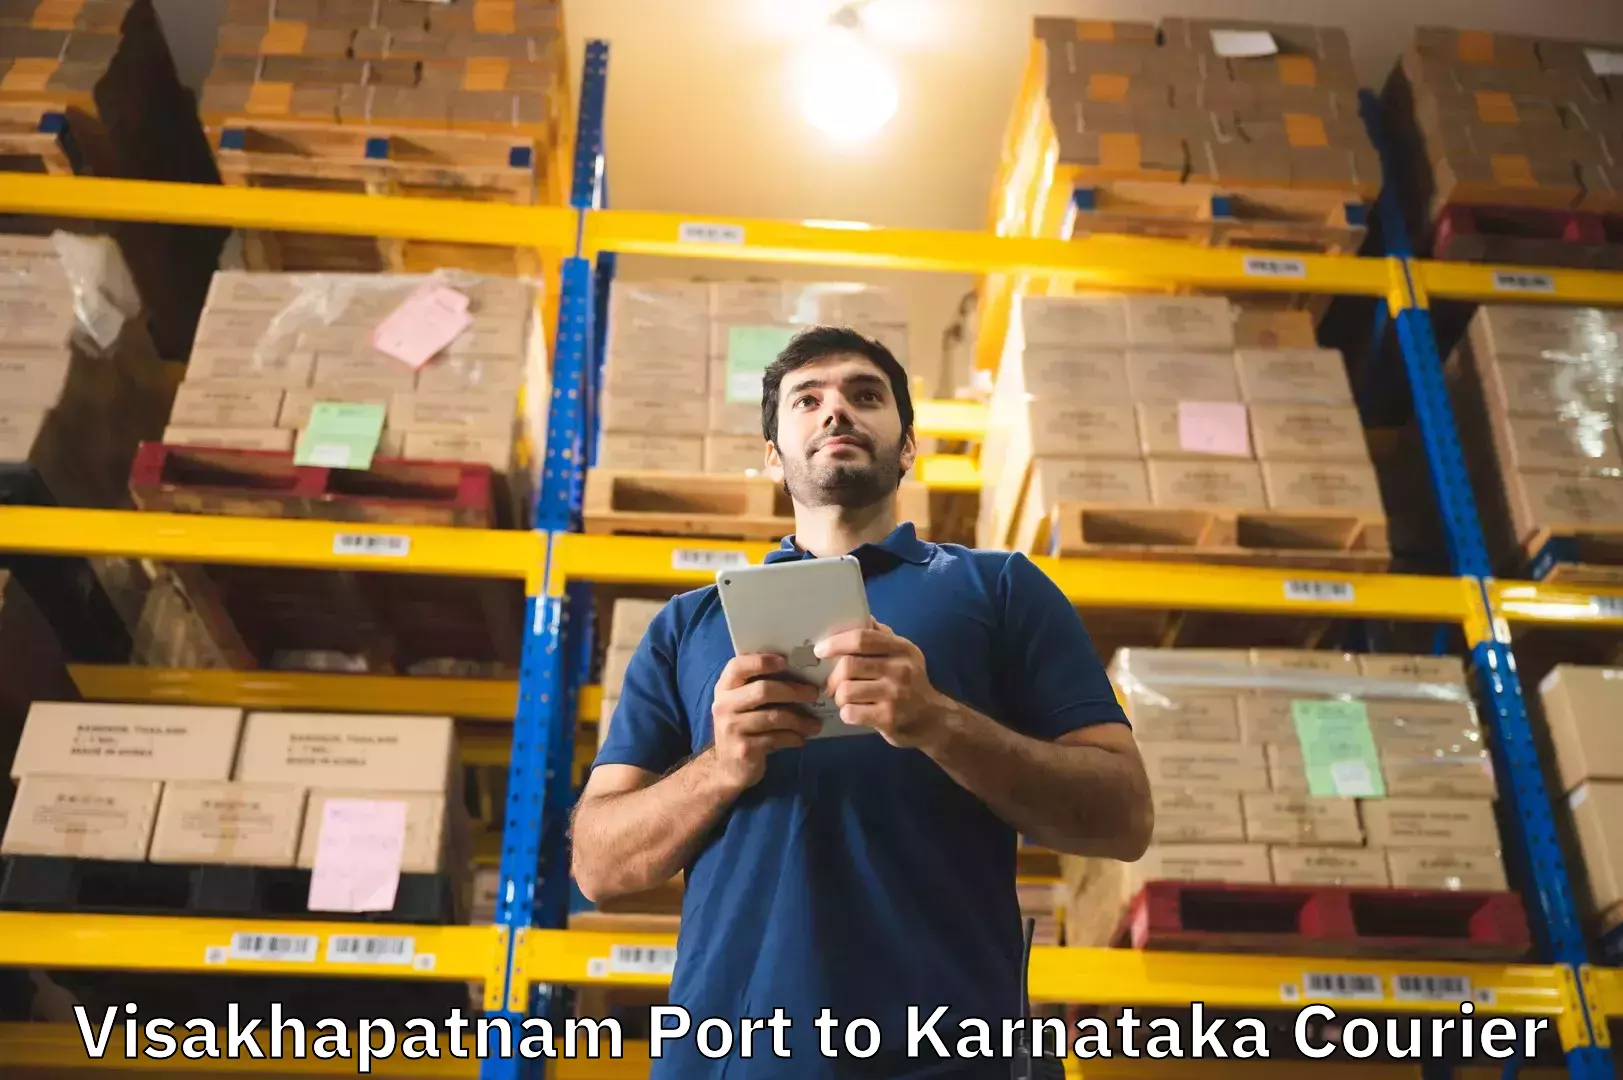 Luggage forwarding service Visakhapatnam Port to Karnataka